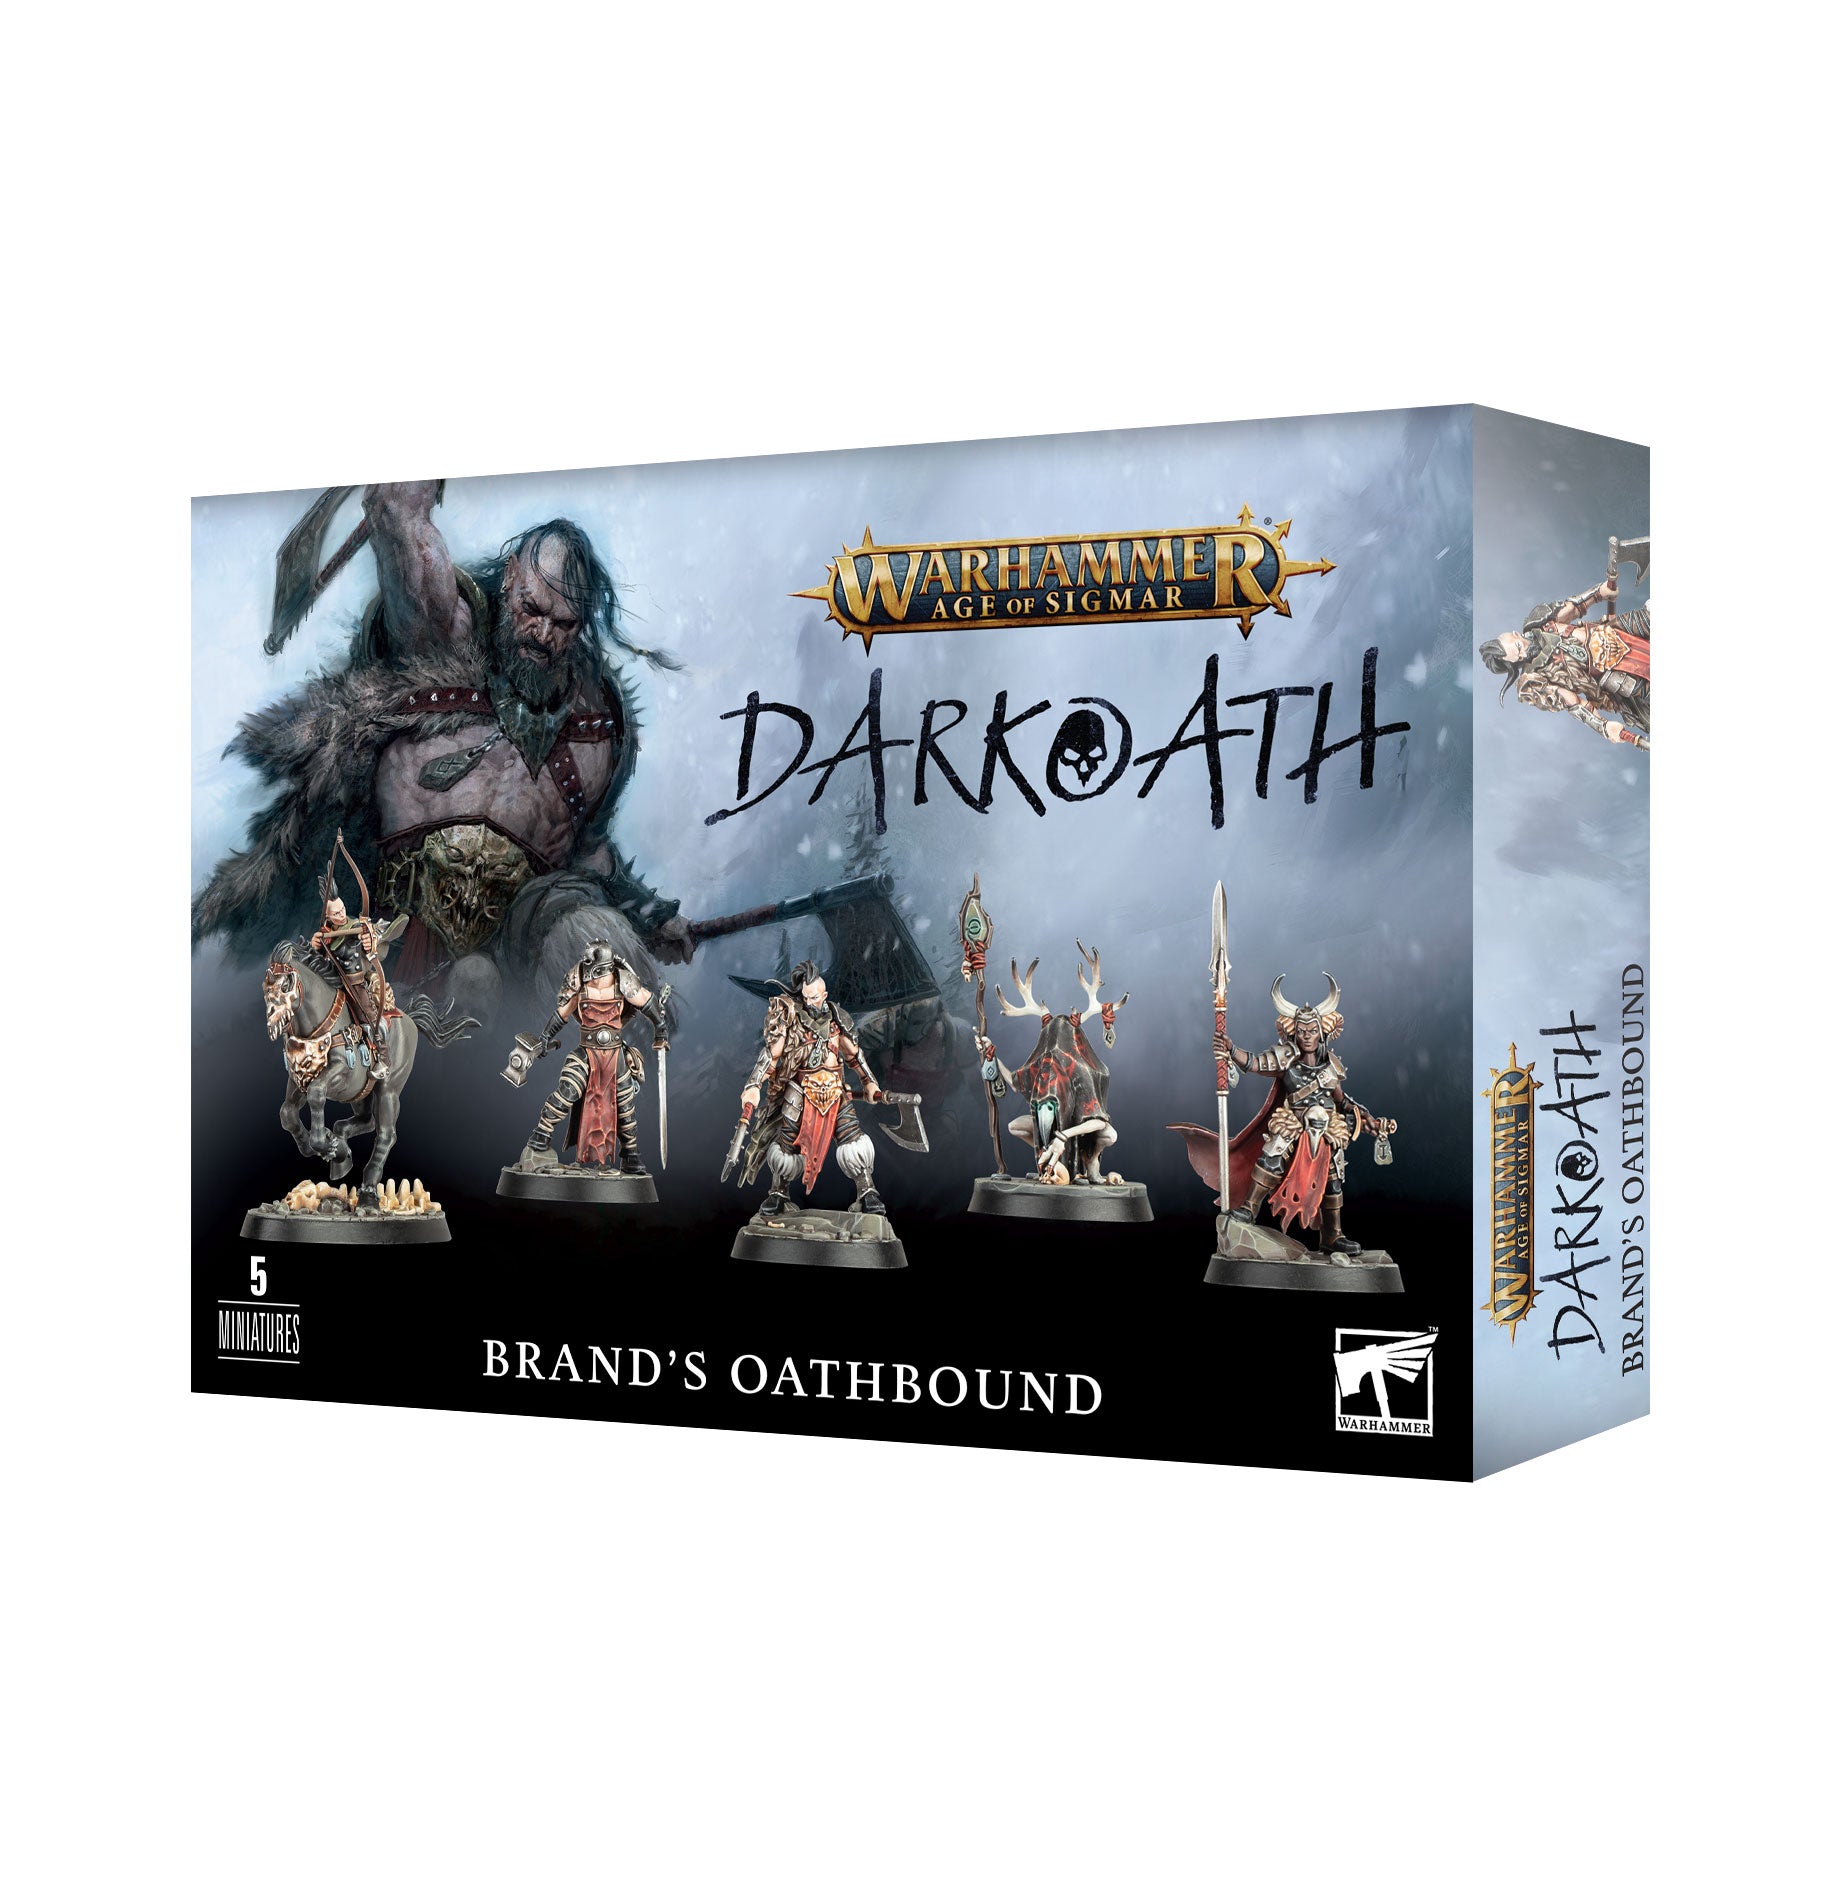 Darkoath: Brand's Oathbound | Multizone: Comics And Games